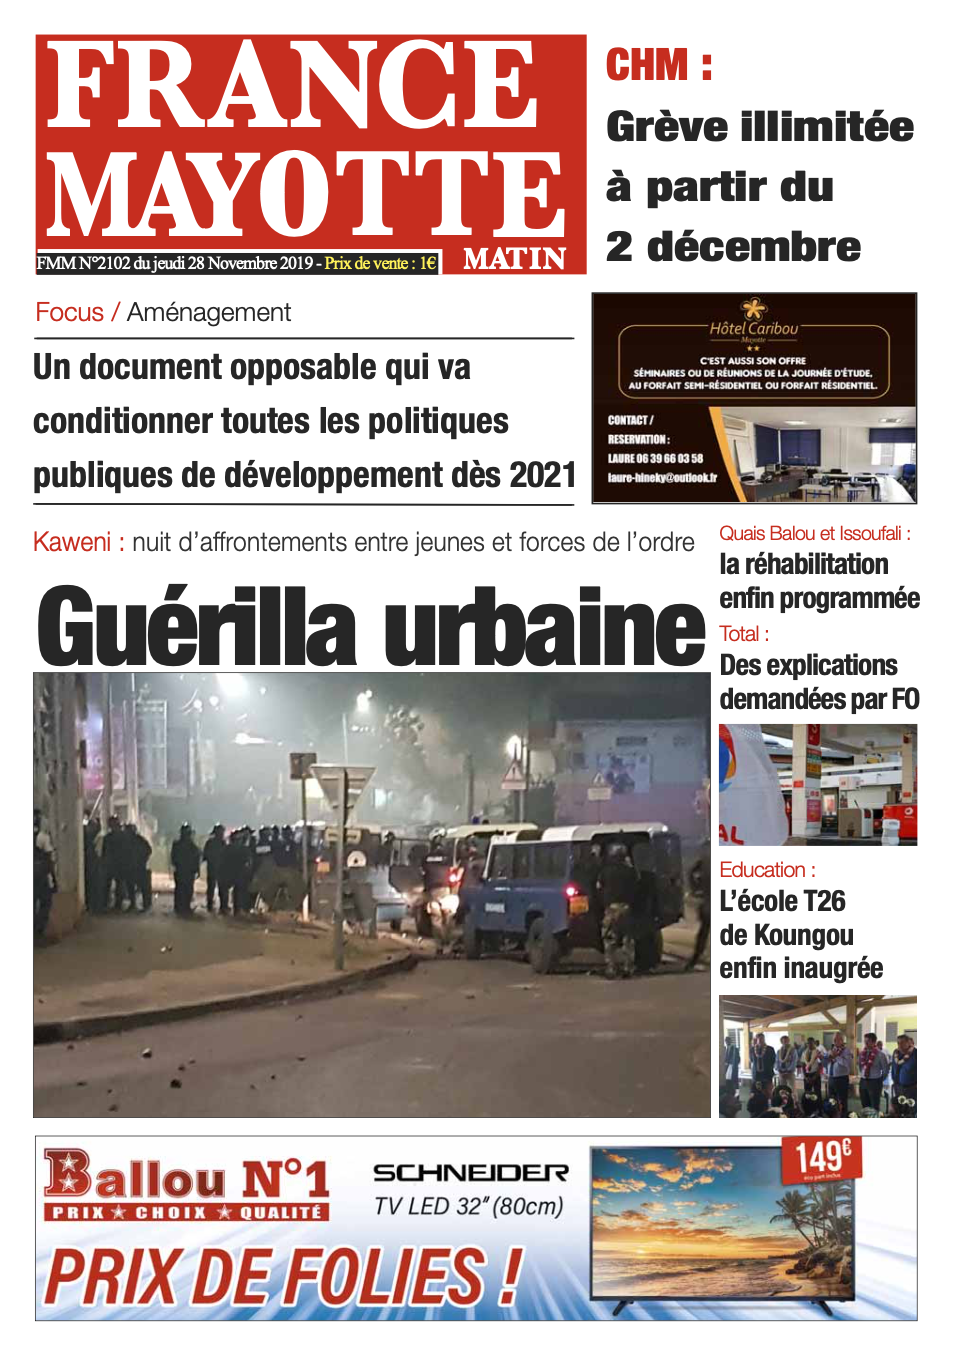 France Mayotte Jeudi 28 novembre 2019